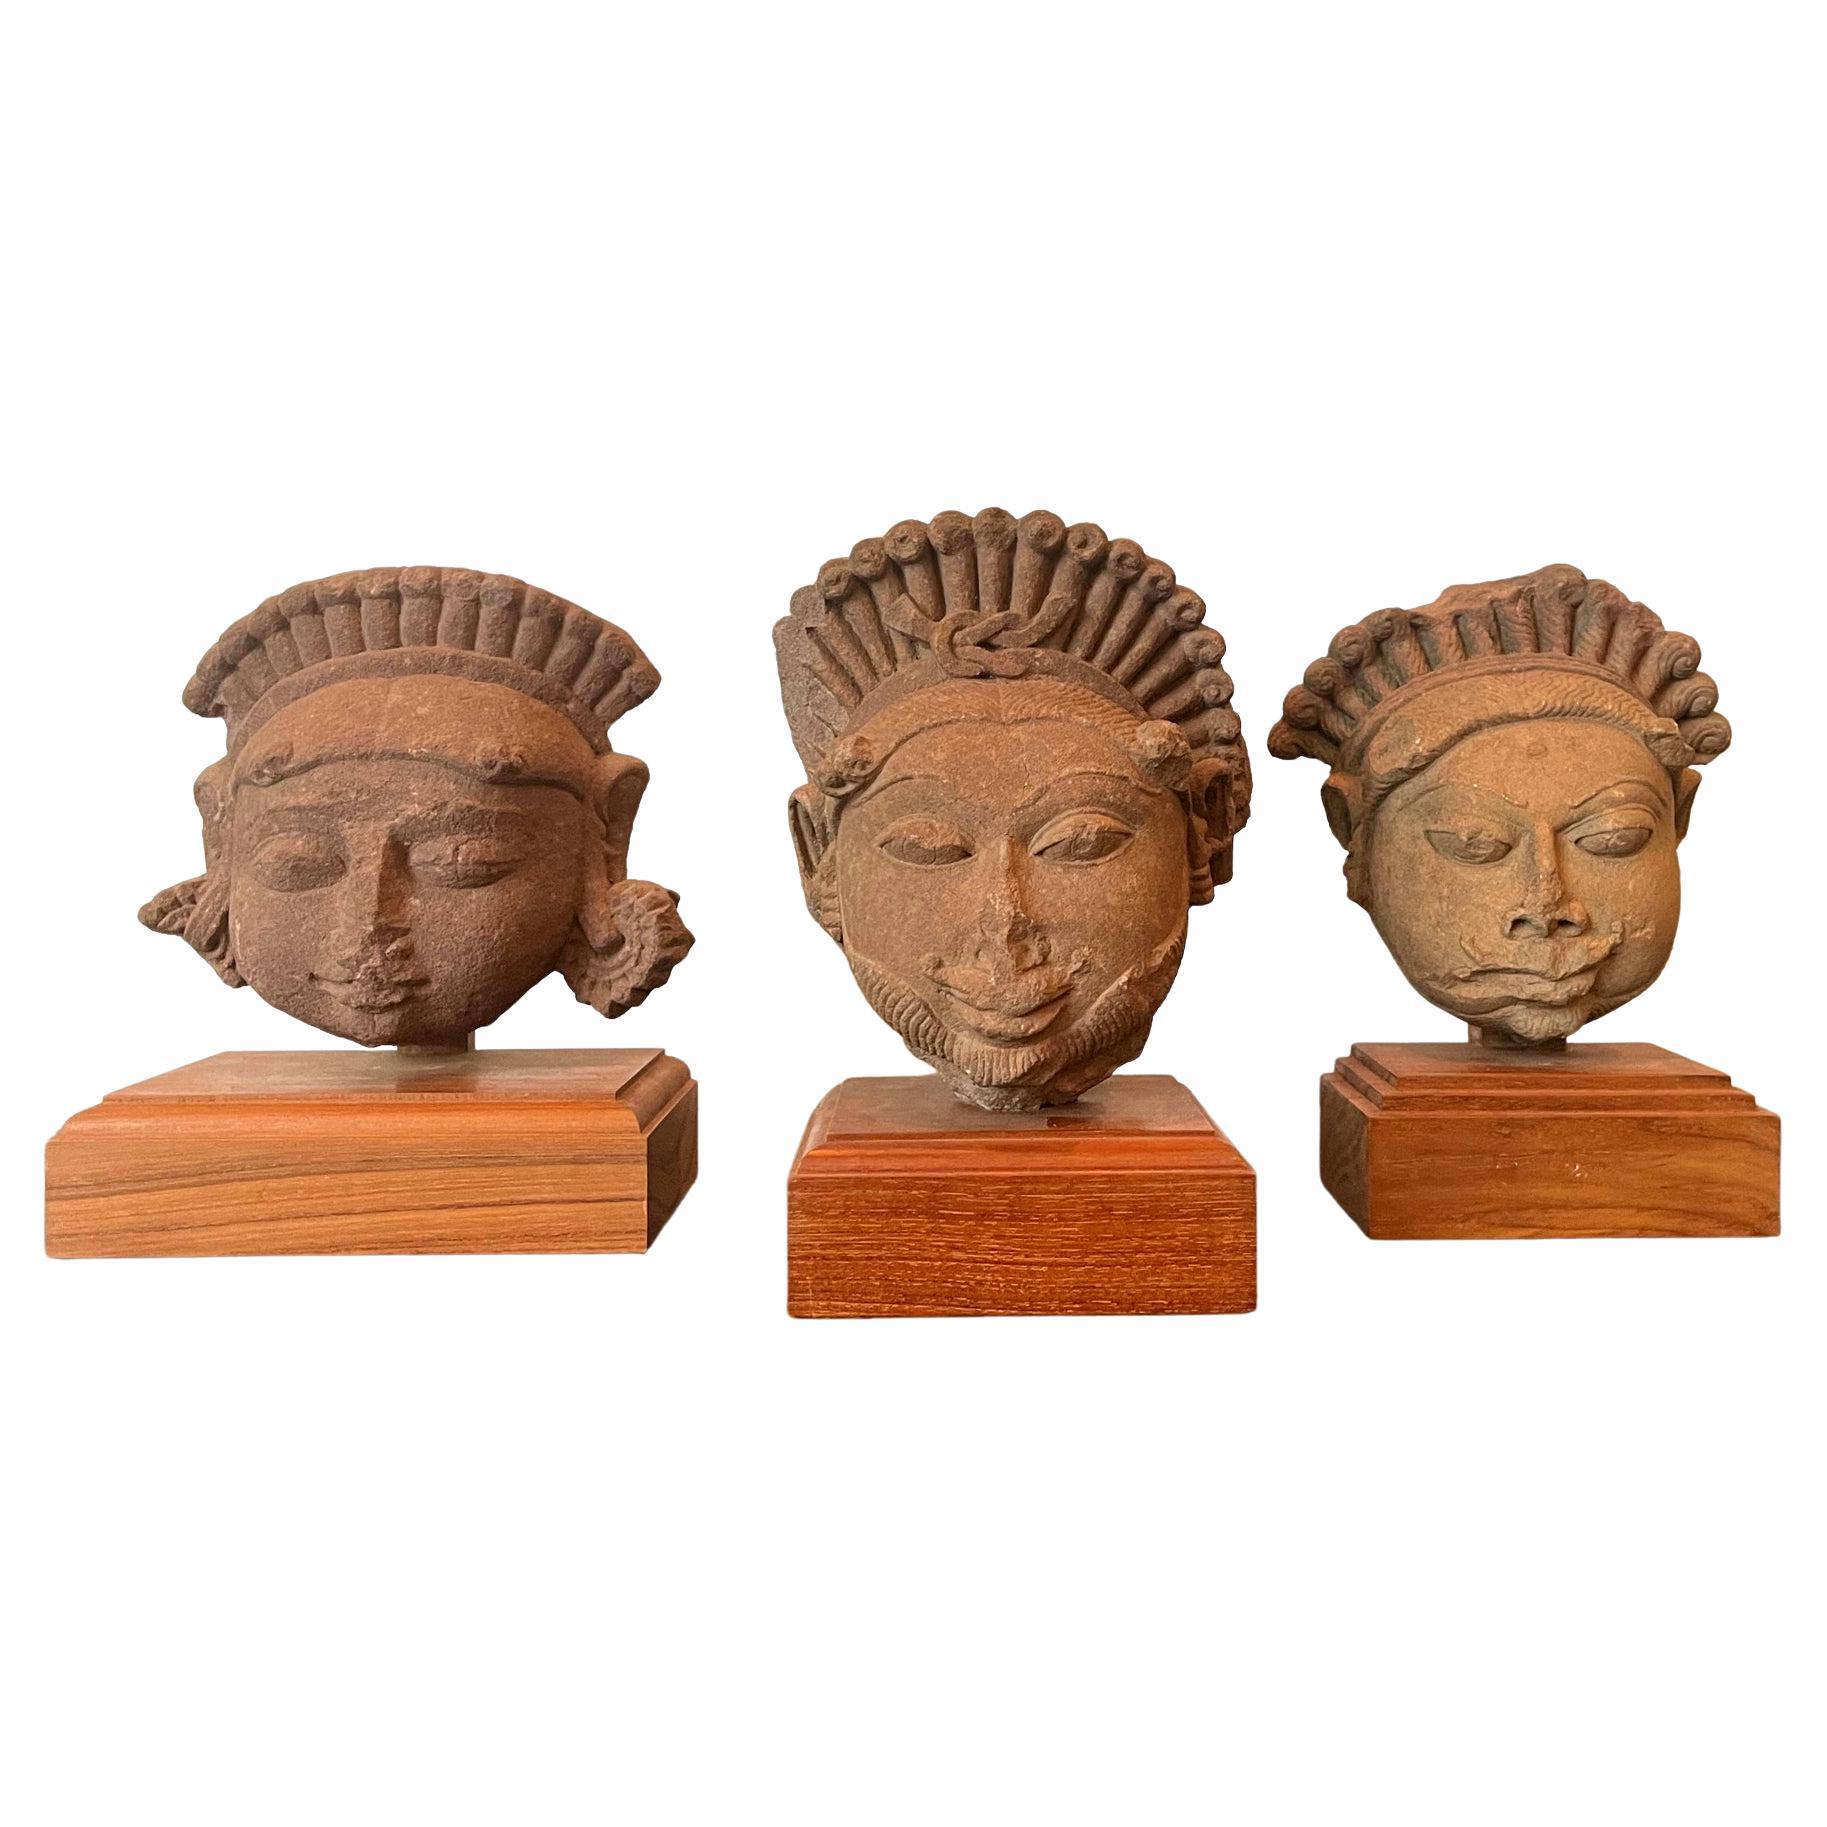 Kollektion von drei geschnitzten Köpfen von Gottheiten aus indischem Sandstein